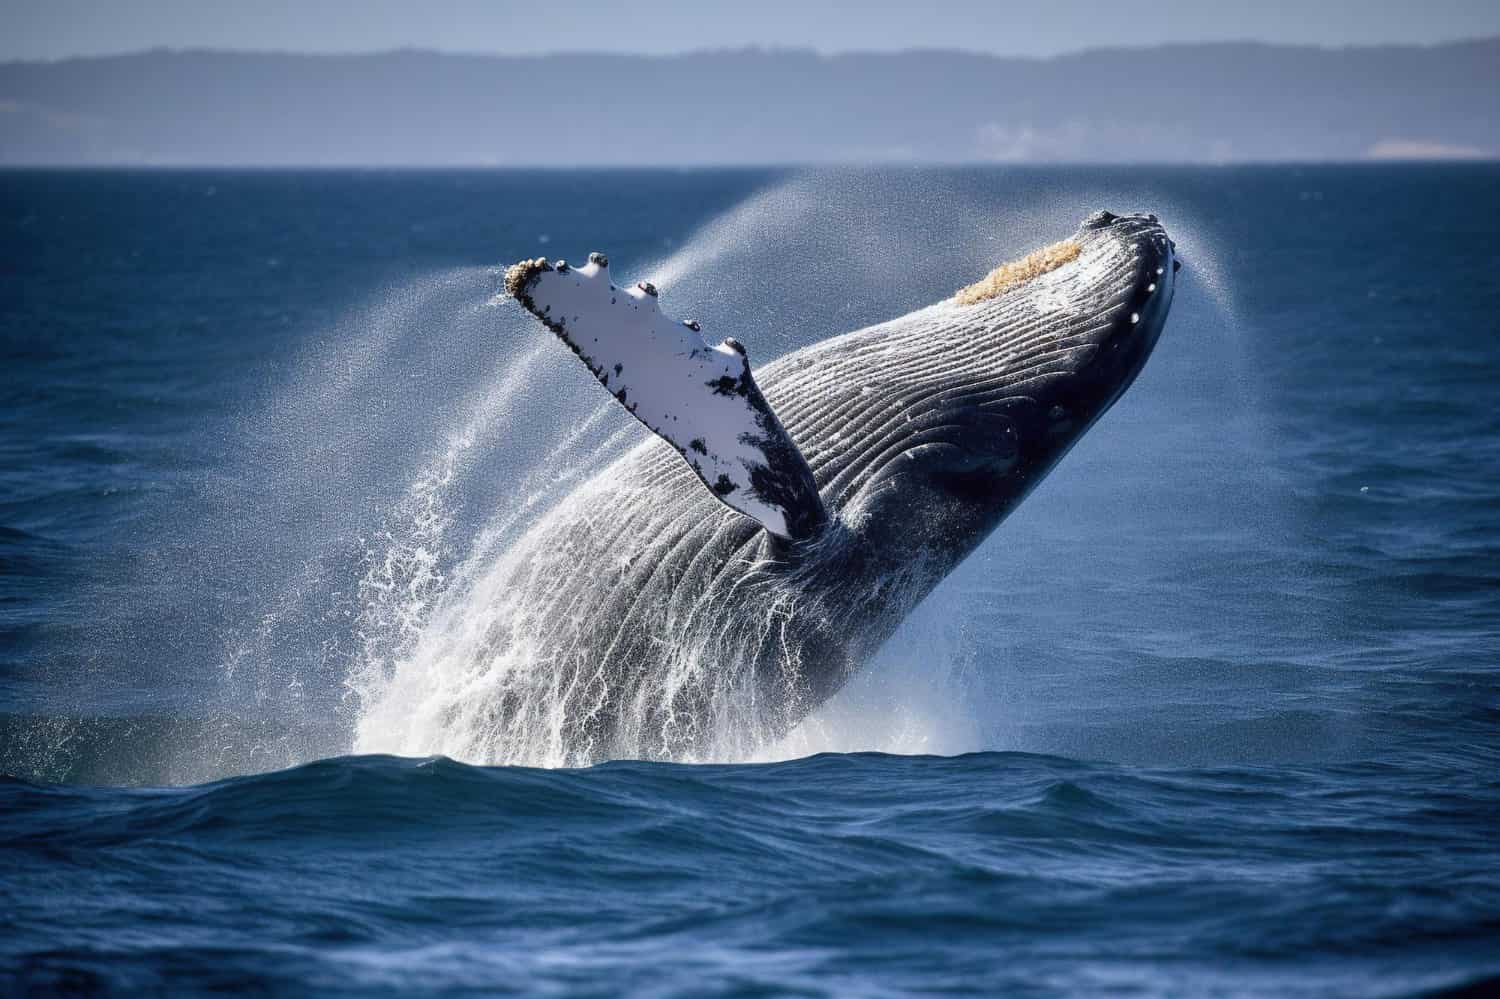 Ballena azul nadando en el océano: símbolo de la grandeza y la fragilidad de la vida marina